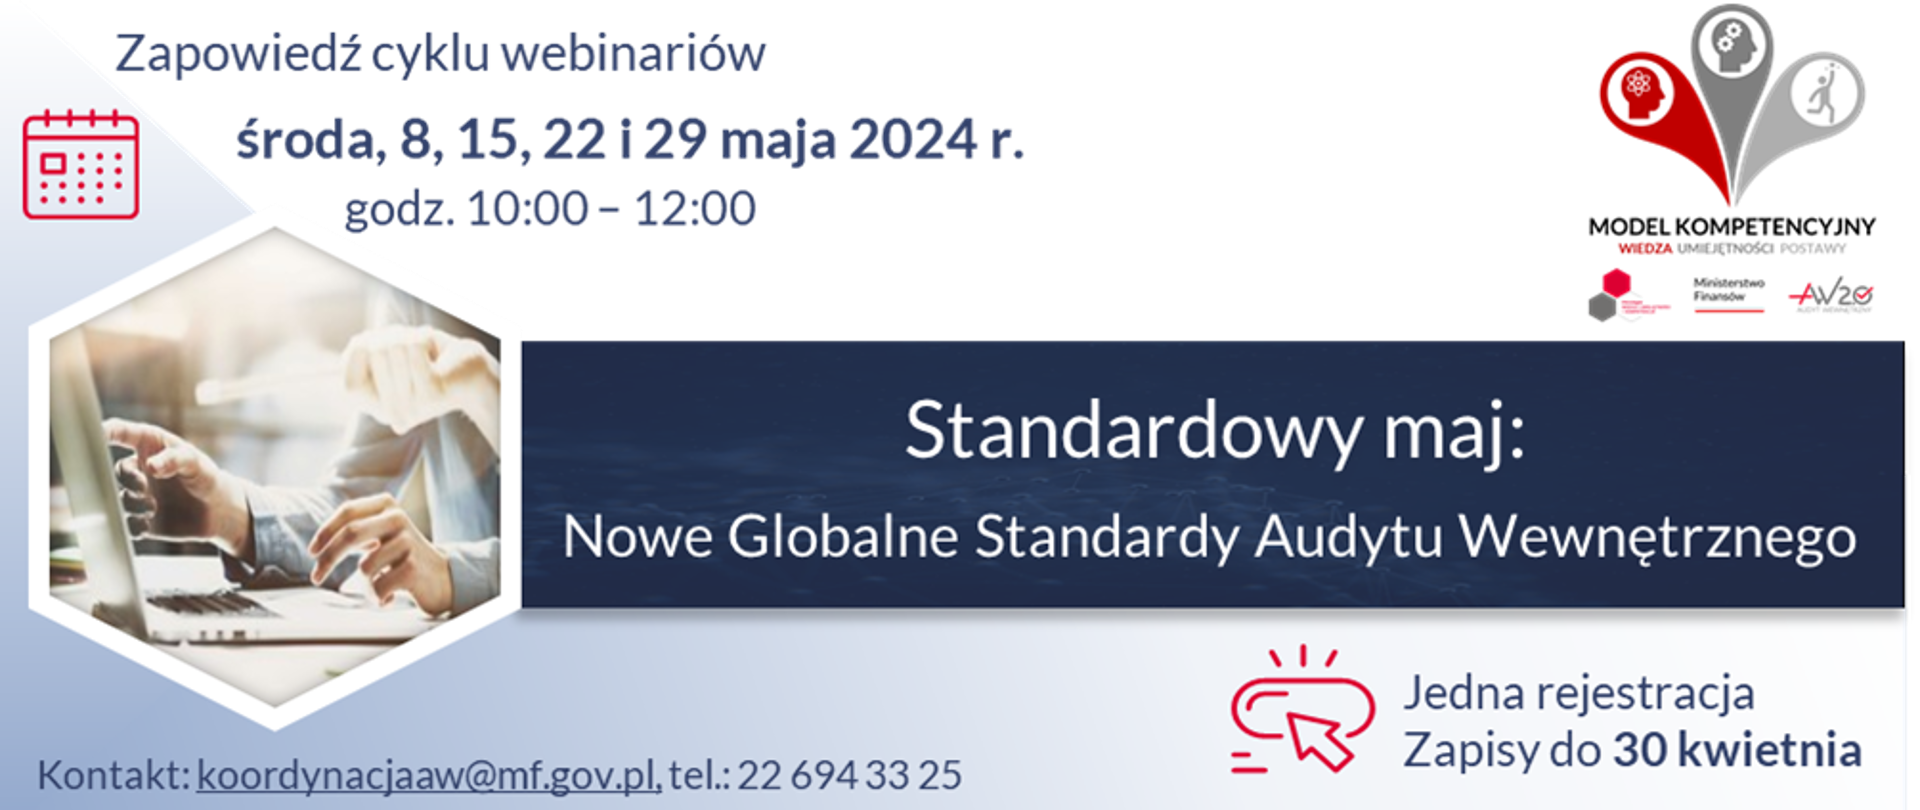 Zapowiedź cyklu webinariów organizowanych w ramach Progr@mu Wiedza i umiejętności = kompetencje przez Ministerstwo Finansów 8, 15, 22 i 29 maja 2024 r. w godzinach od 10:00 do 12:00.
Temat webinarium: „Standardowy maj: Nowe Globalne Standardy Audytu Wewnętrznego”.
Jedna rejestracja, zapisy do 30 kwietnia.
Kontakt: koordynacjaaw@mf.gov.pl, tel.: 22 6943325